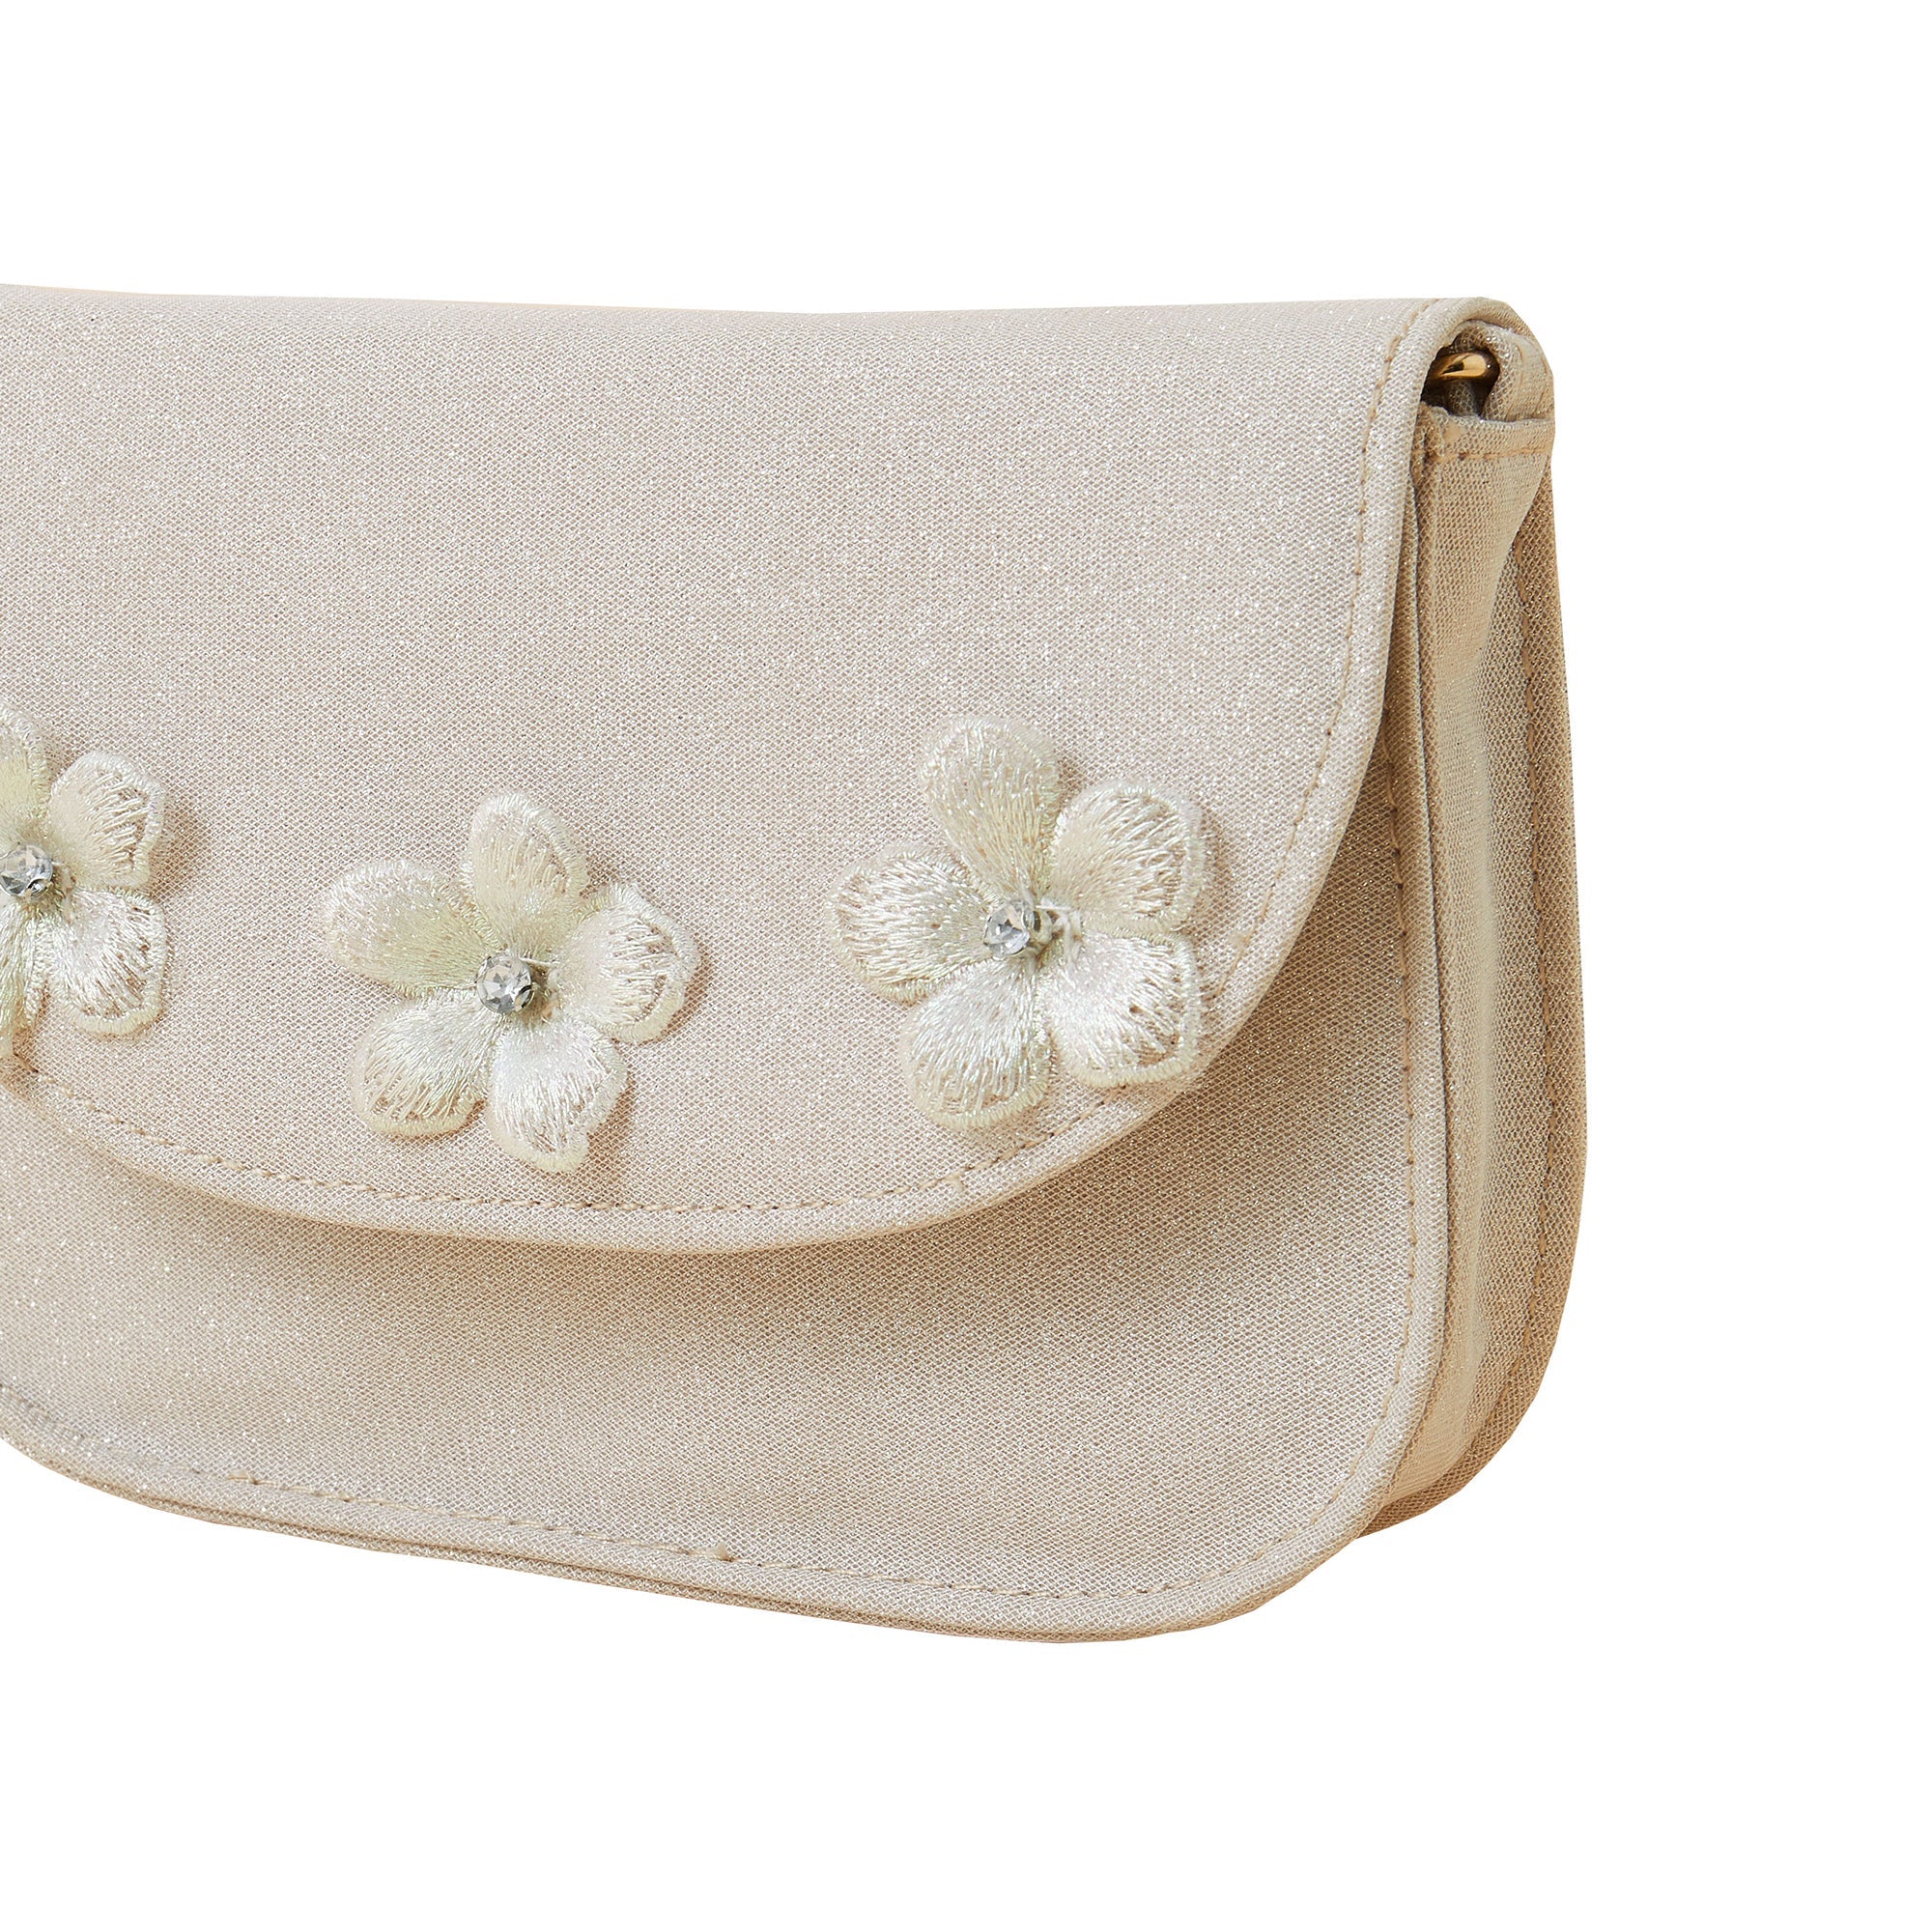 Accessorize London Girl's R Shimmer Flower Bag